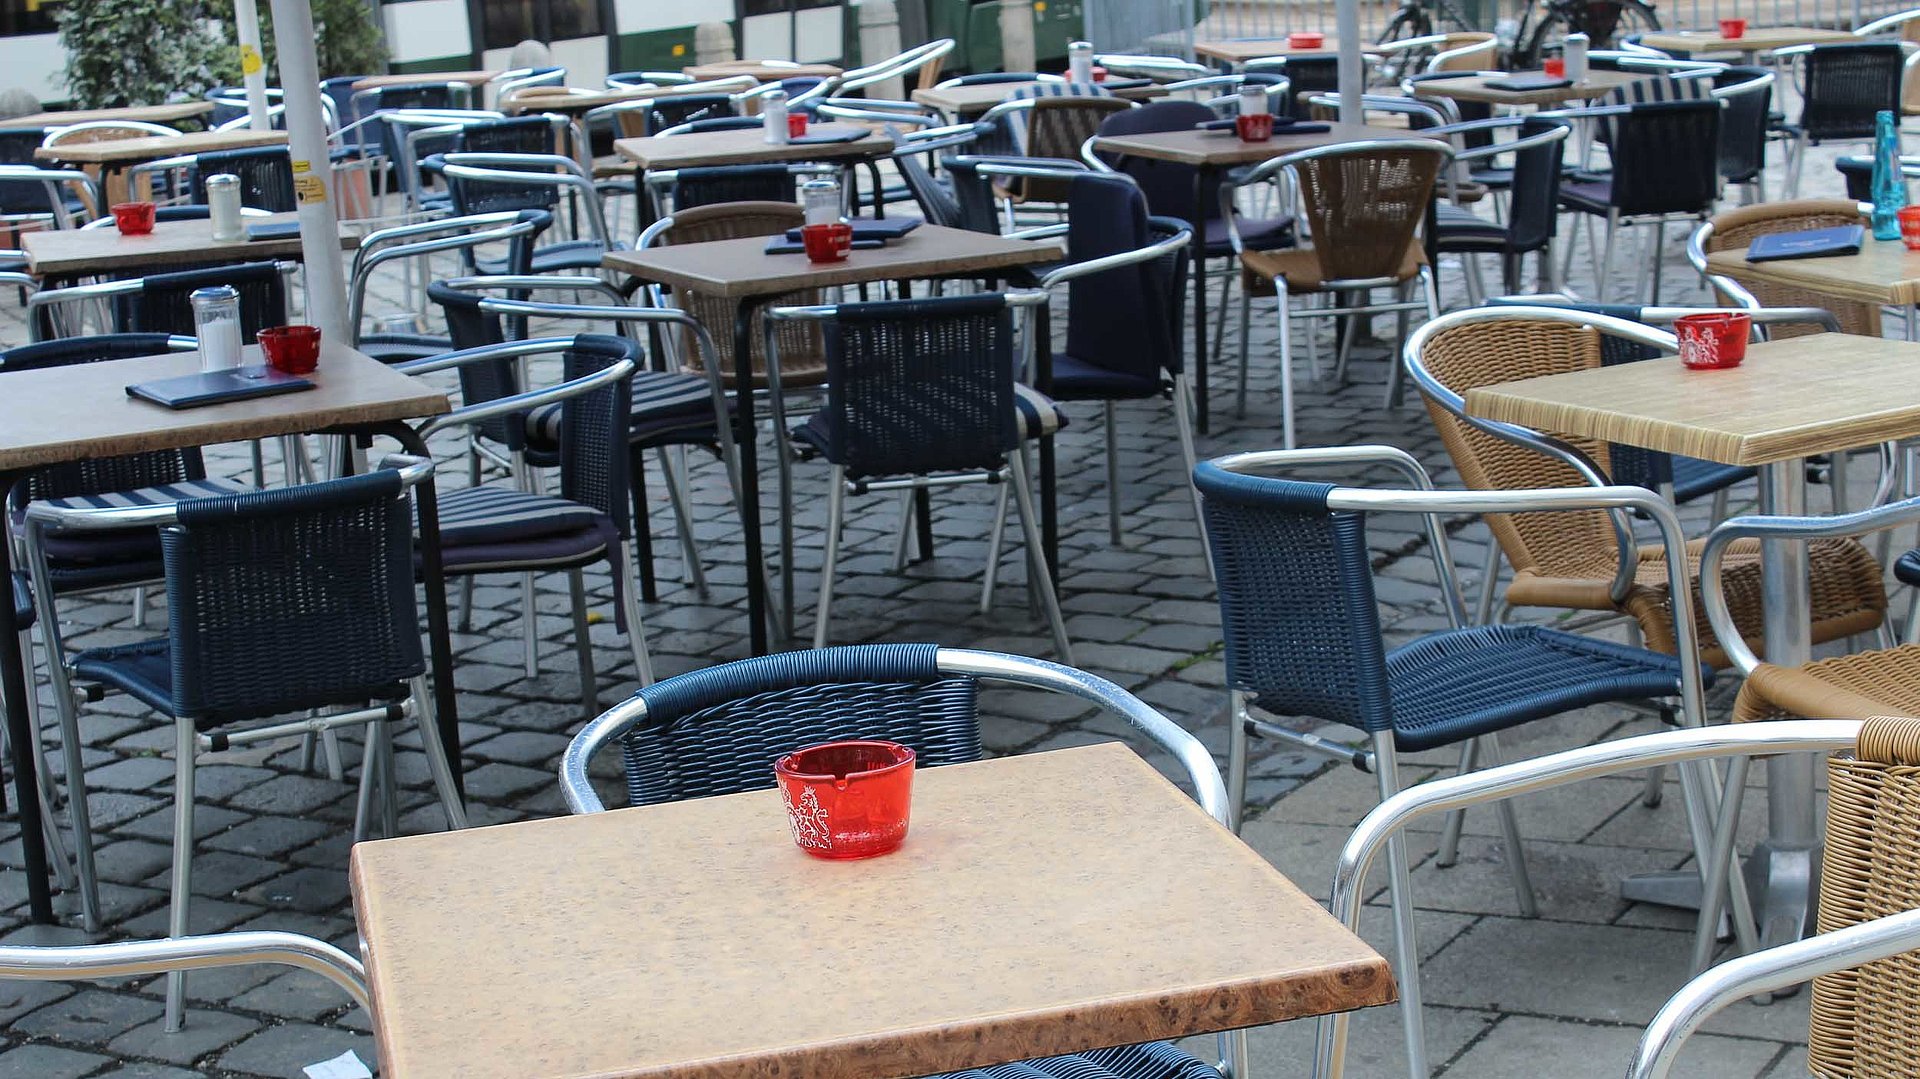 Cafés mit Terrasse in Ingolstadt - Außenbereich vom Café mit vielen schönen Sitzgelegenheiten